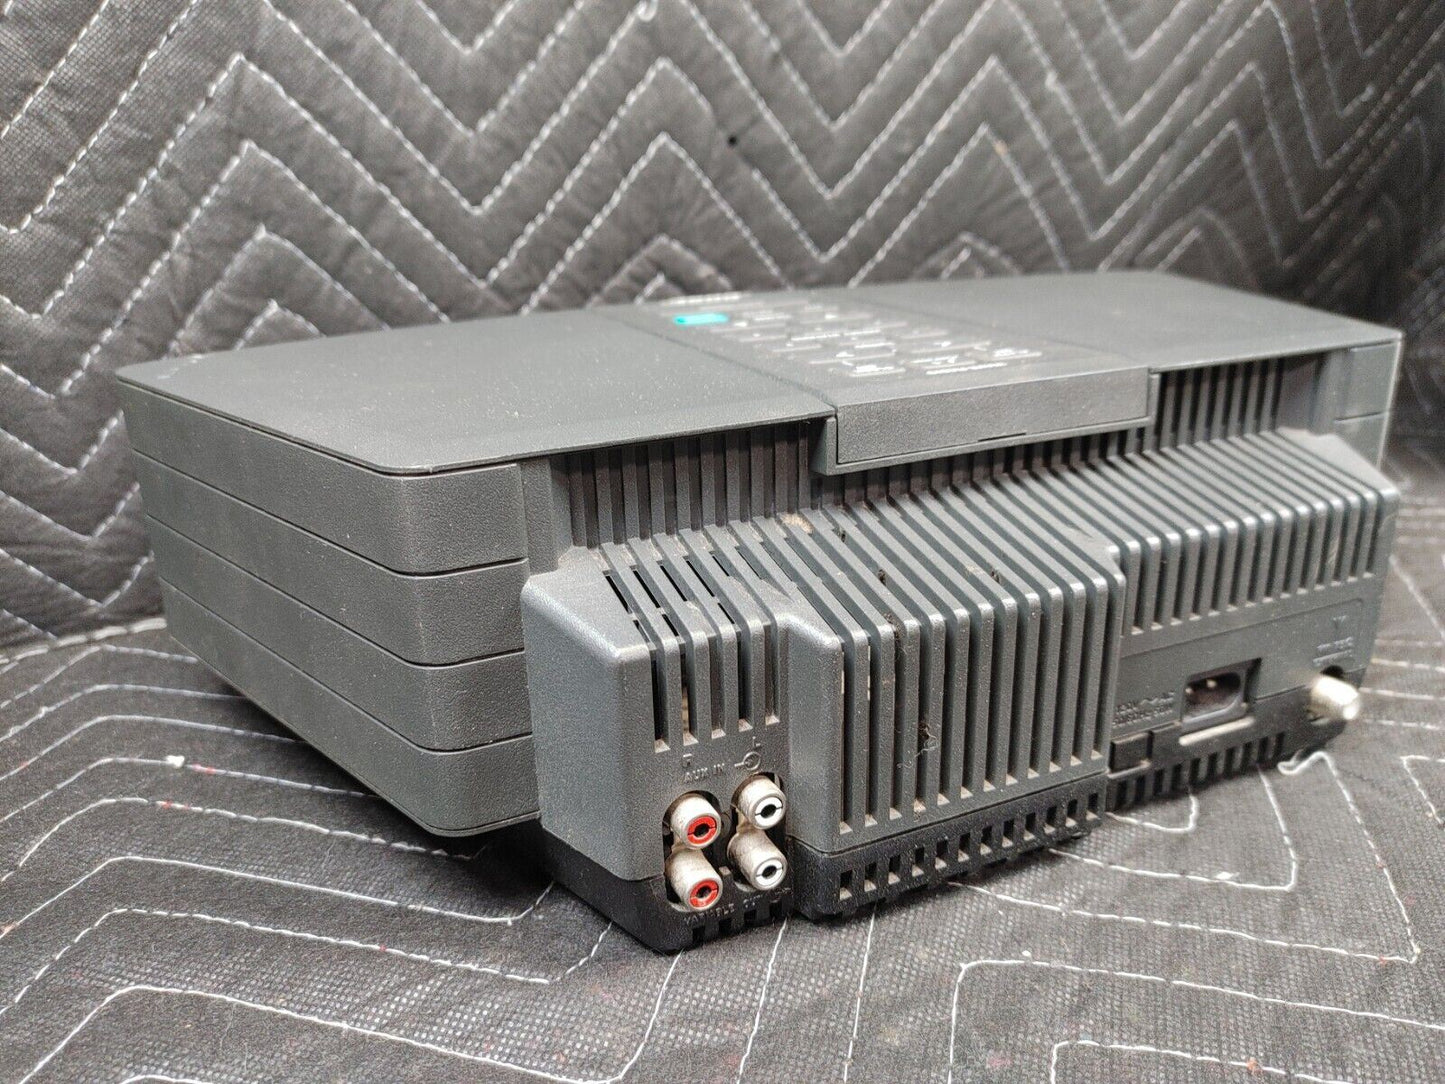 Bose Wave Radio Model AWR1-1W AM/FM Alarm Clock Stereo System